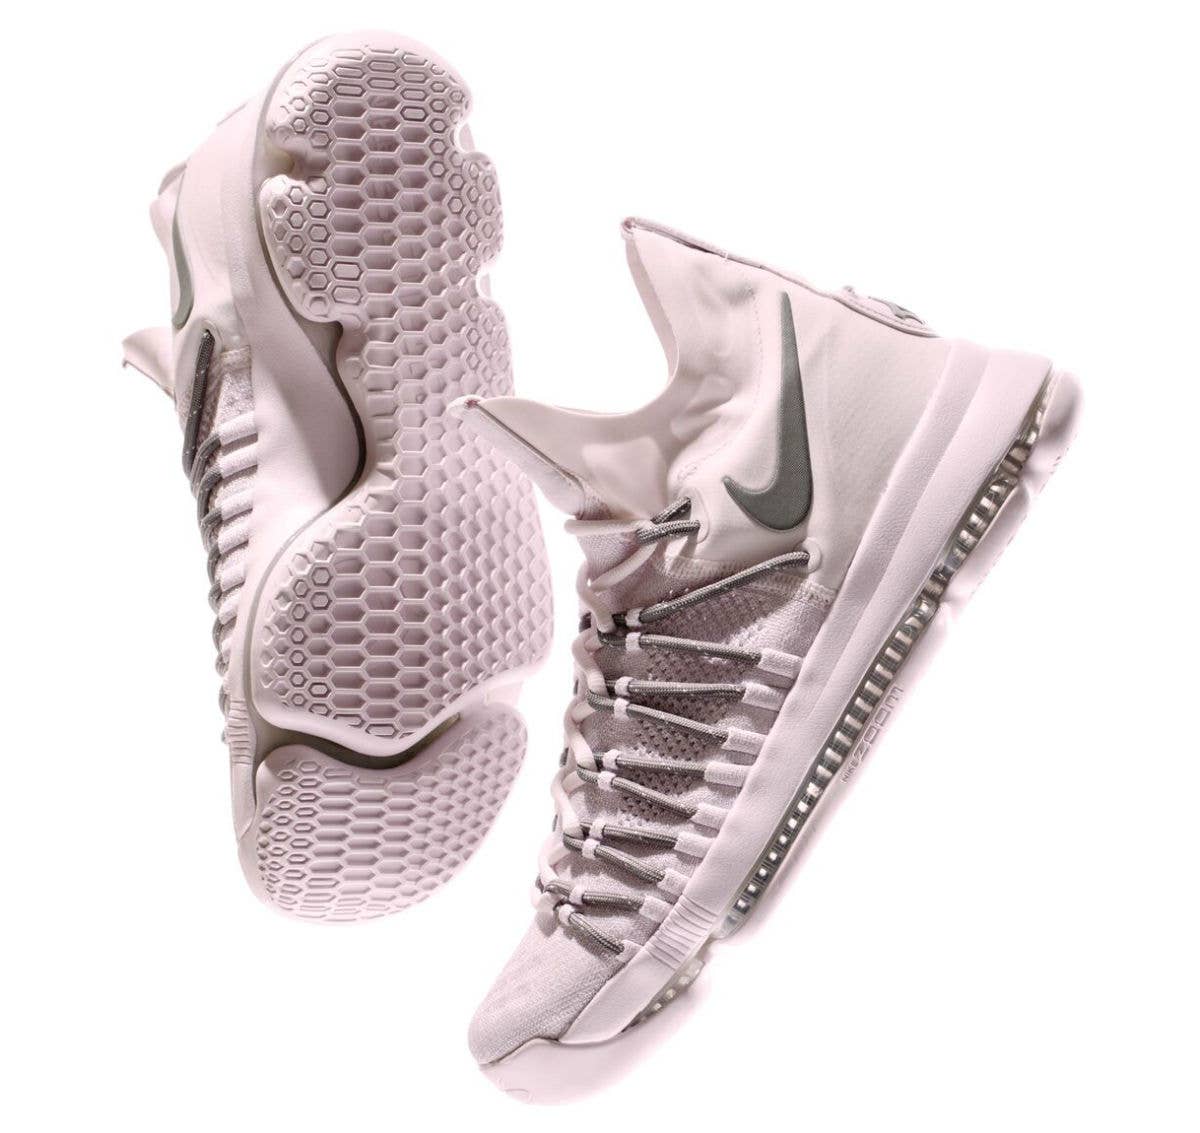 Nike KD 9 Elite Pink Dust Release Date (1)